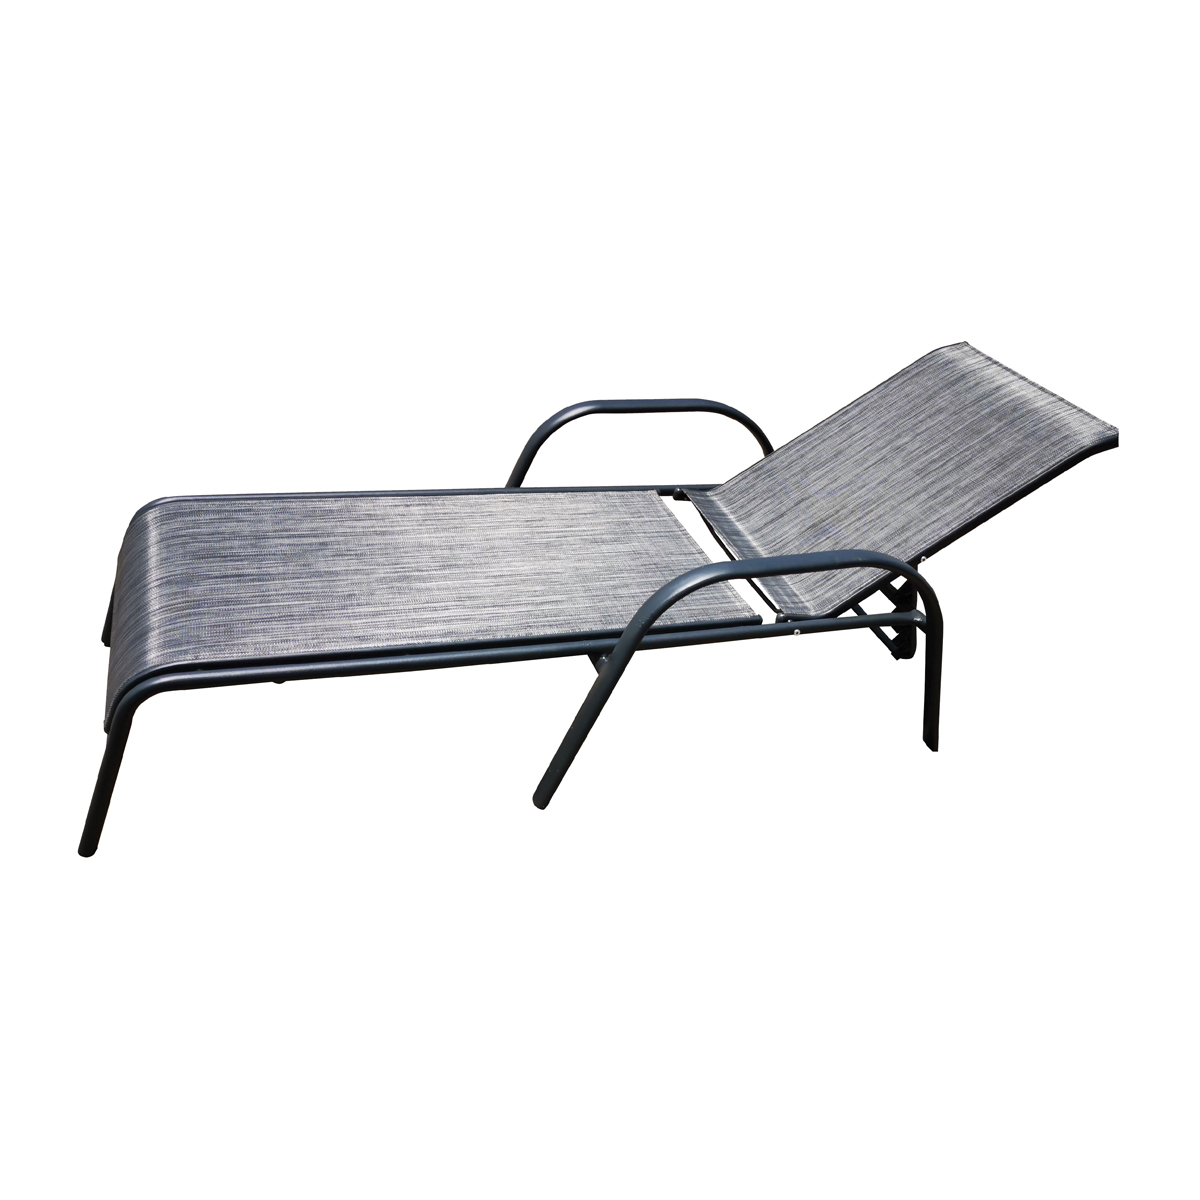 Seasonal Trends 50666 Lounge Chair, 25.59 in OAW, 75.98 in OAD, 37.40 in OAH, 5 -Position, Aluminum Frame - 1